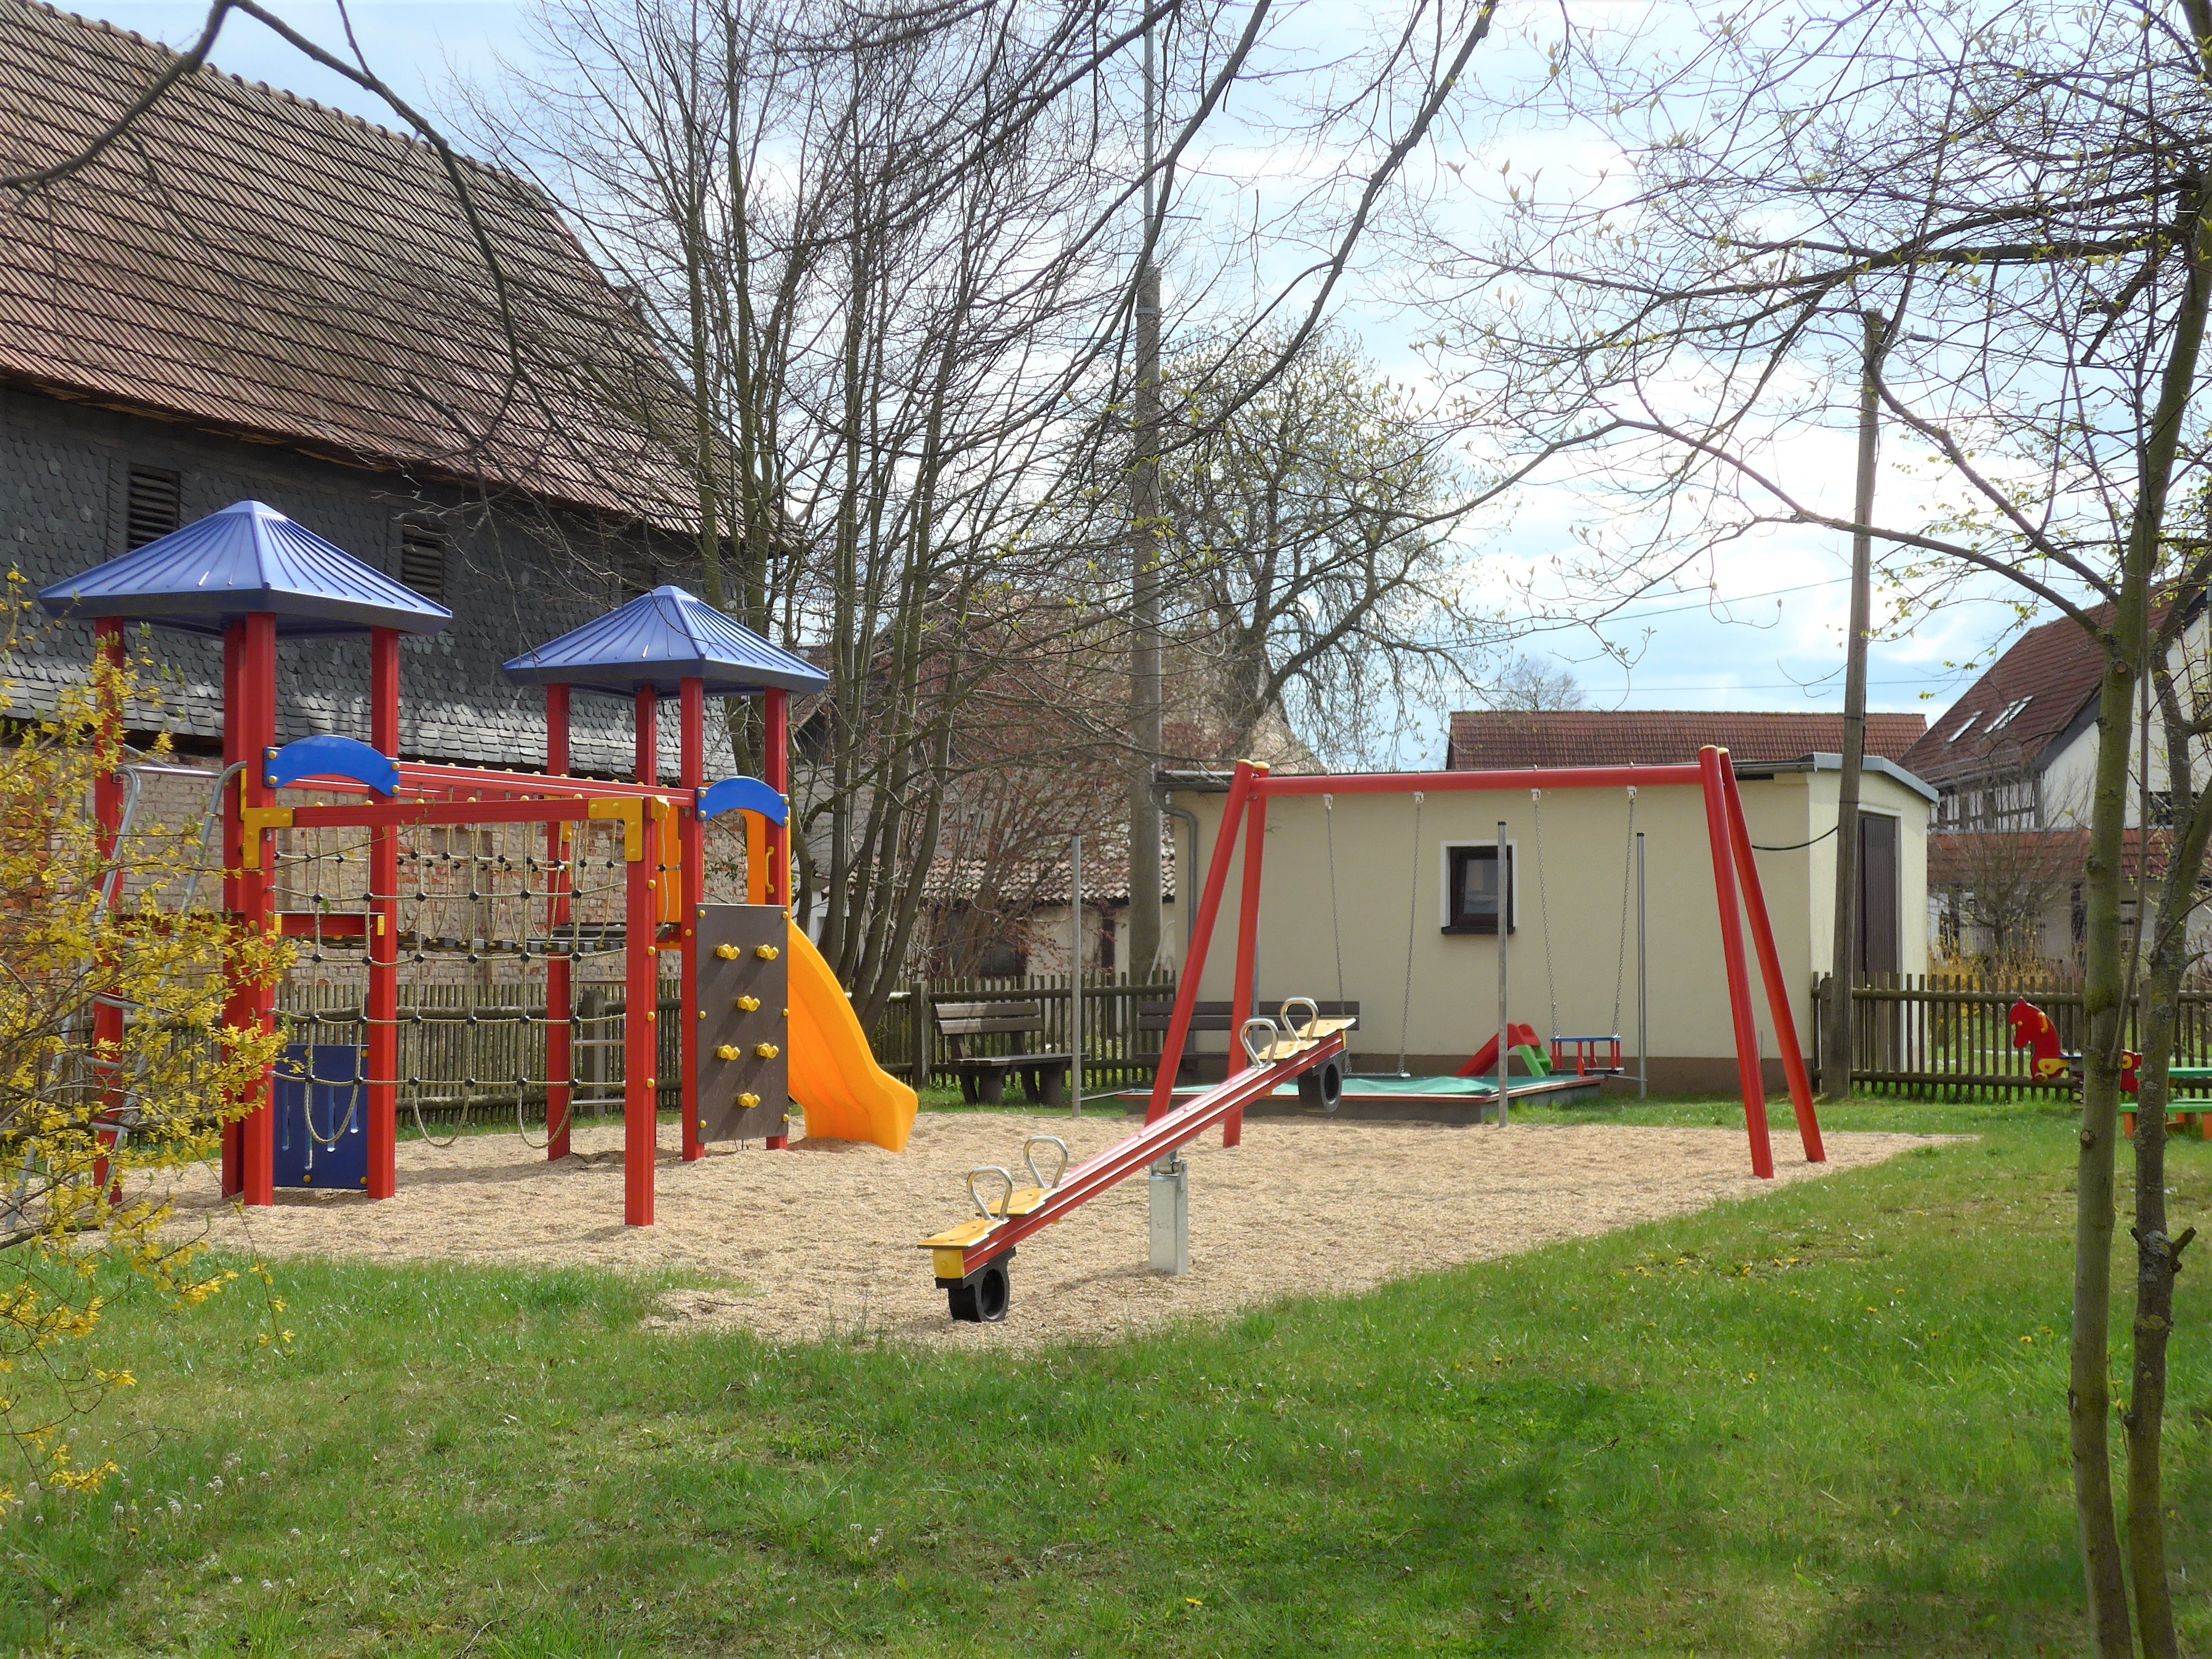 Spielplatz in Berthelsdorf mit Turm-Schaukel-Kombination, Fußballtore, Wippe viersitzig, Tischtennisplatte, 2 Bänke